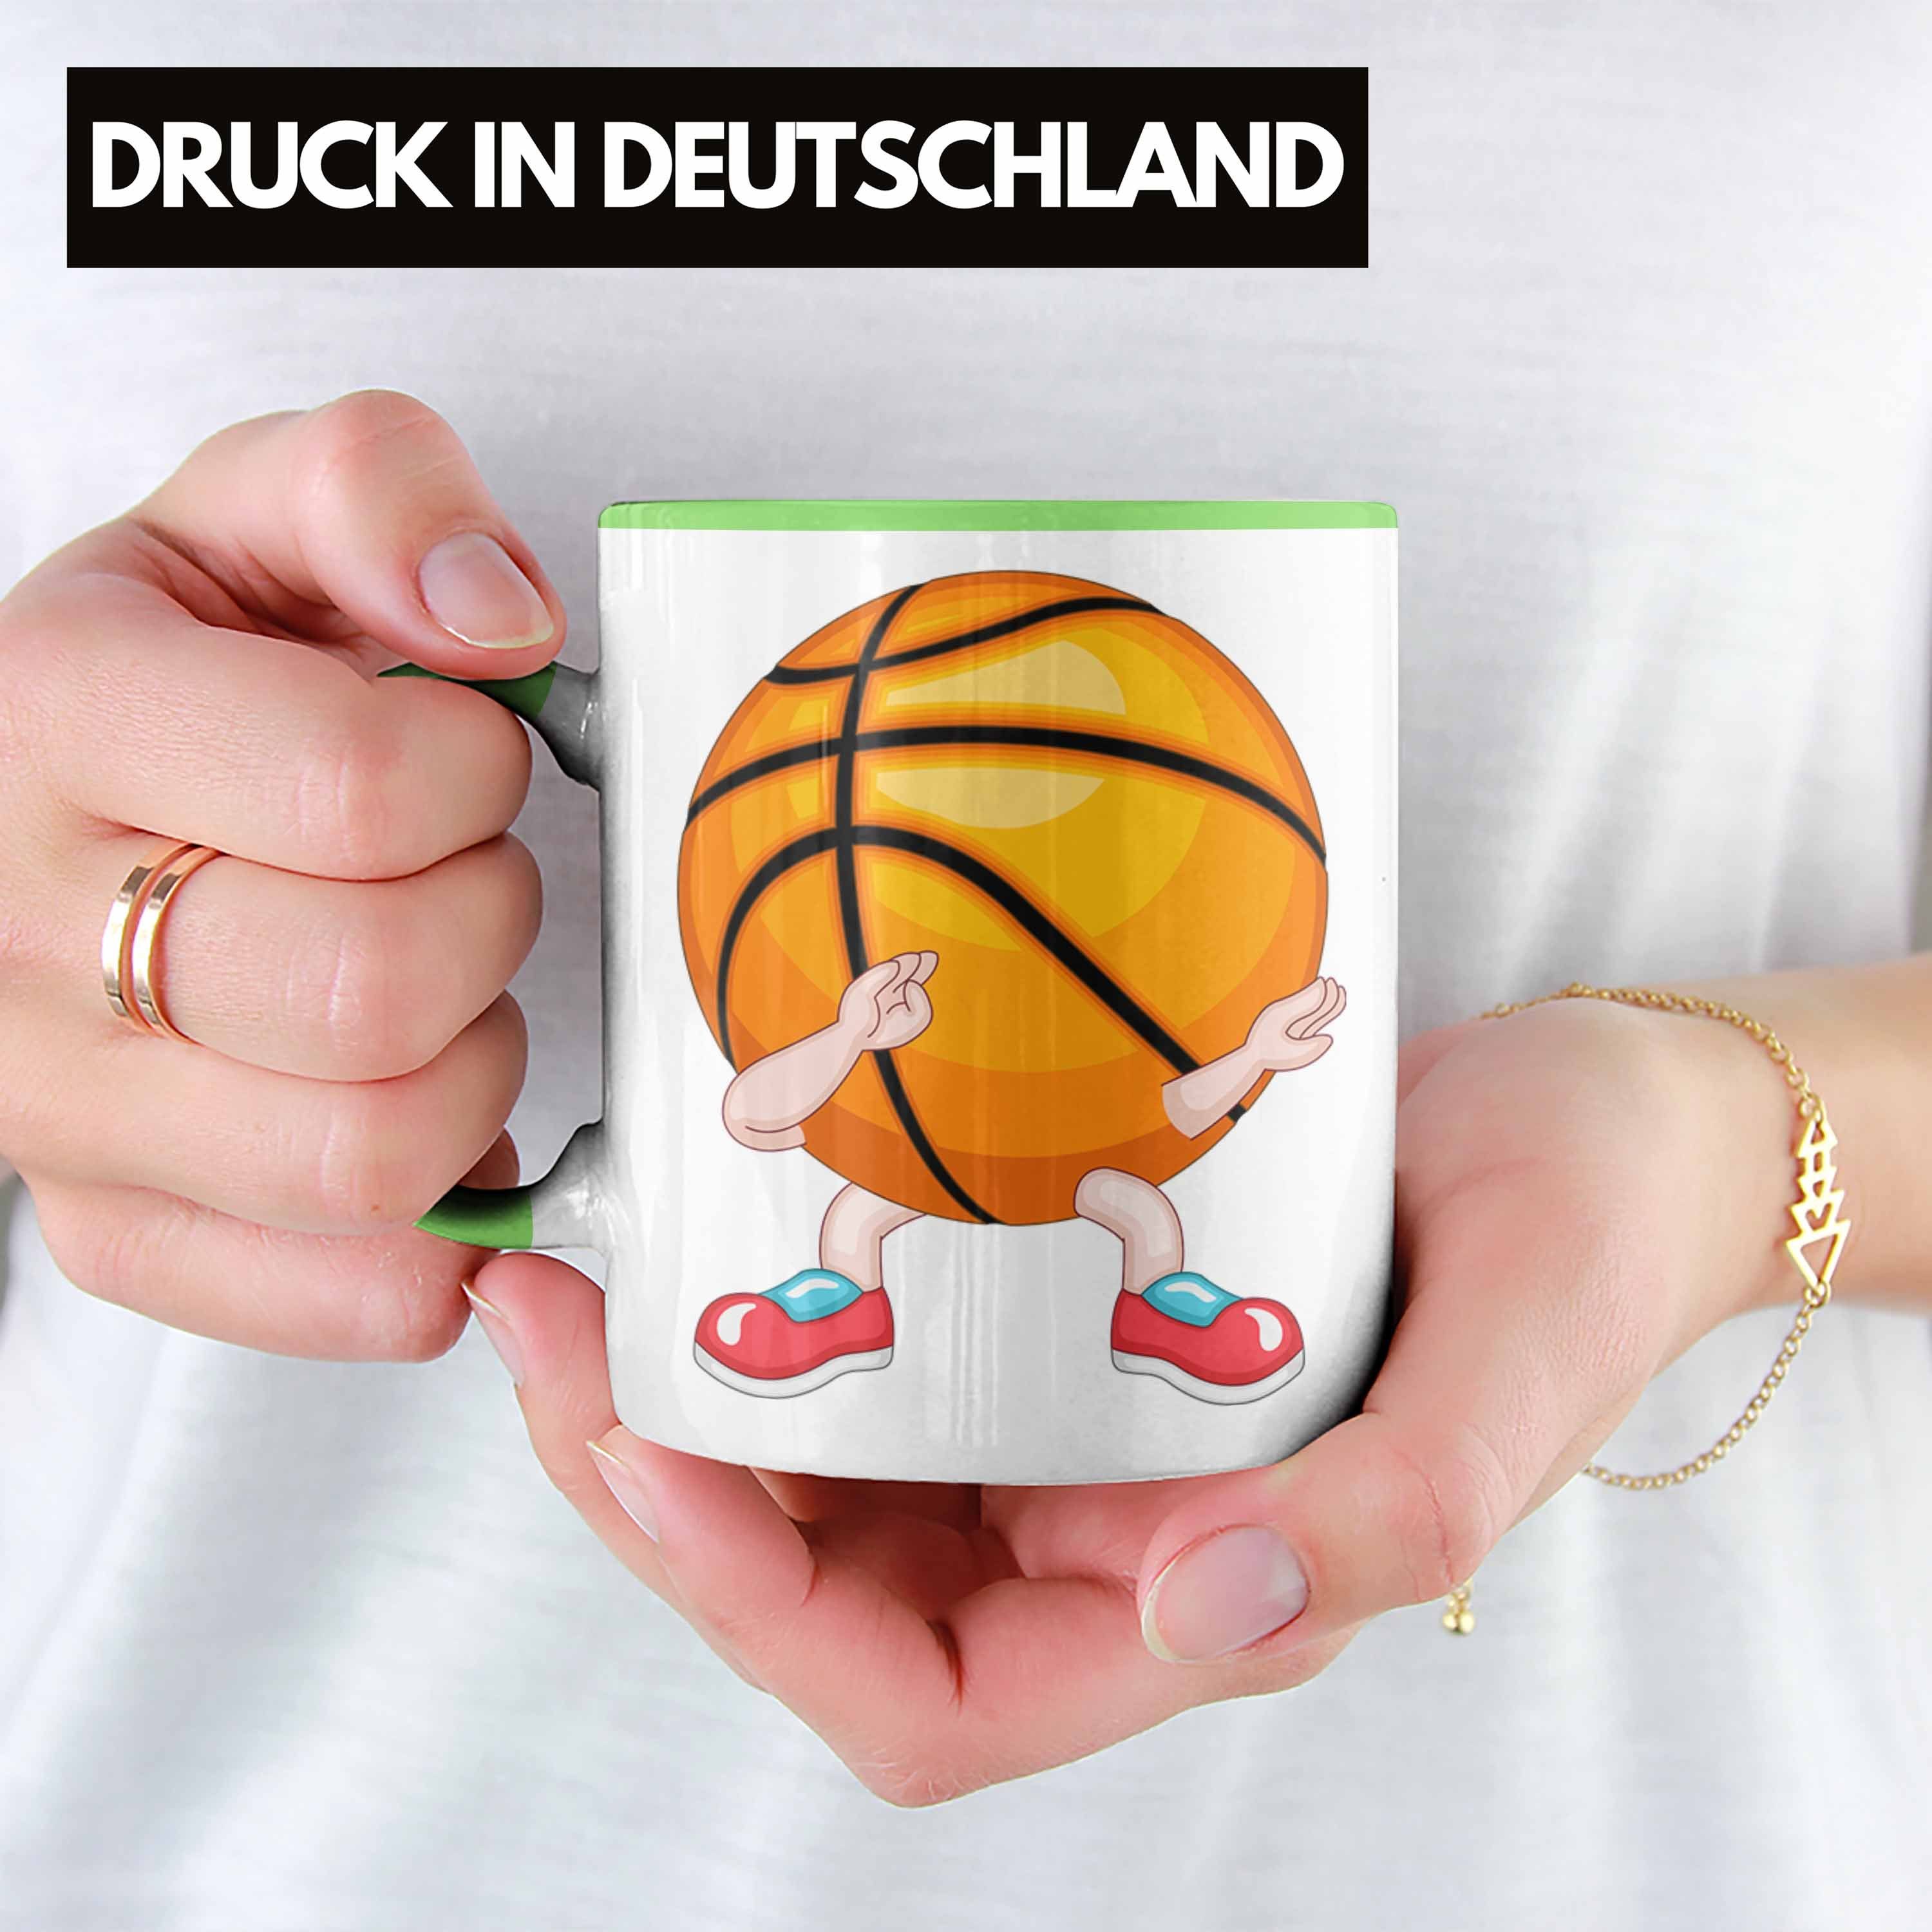 Trainer Tasse Spieler Coach Geschenk Trendation Grün Lustige Tasse für Basketball Basketball